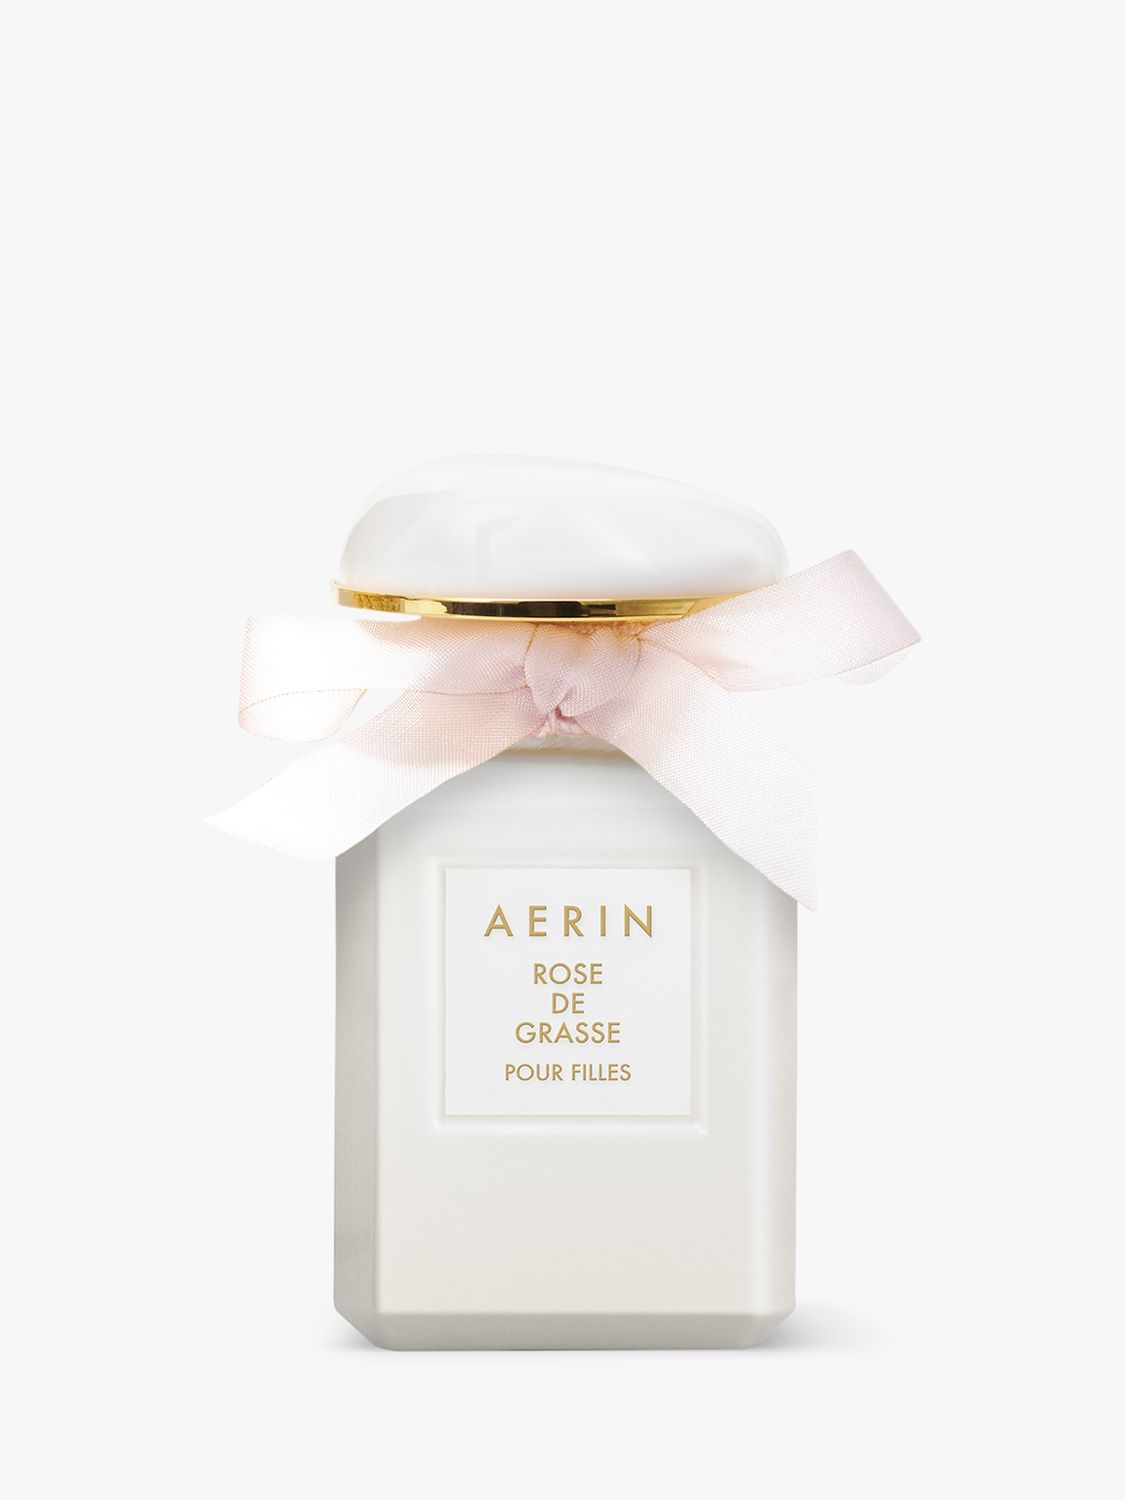 AERIN Rose de Grasse Pour Filles Eau de Parfum, 30ml 1